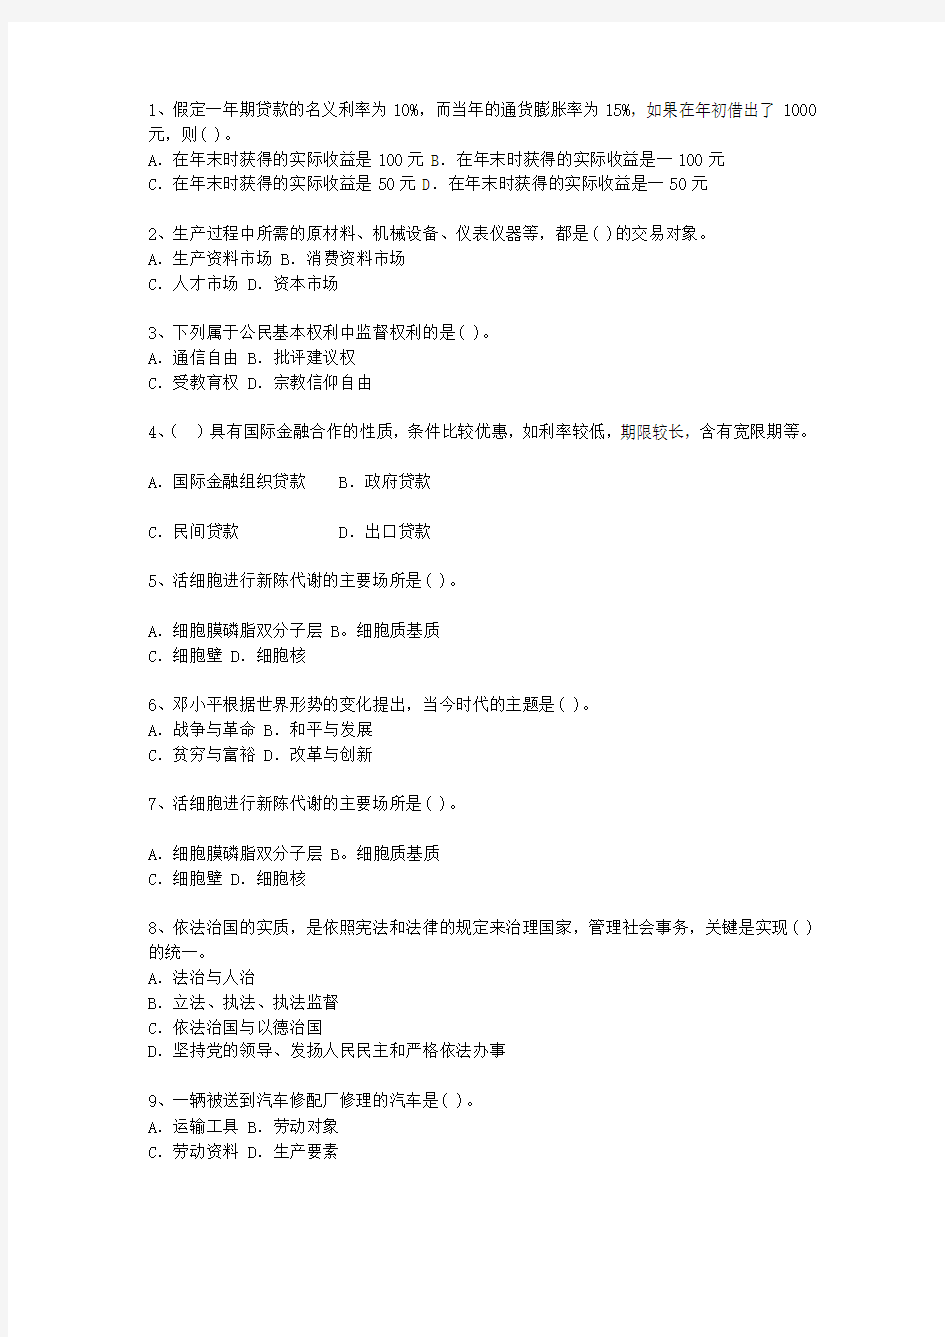 2011湖北省公开选拔镇副科级领导干部考试答题技巧